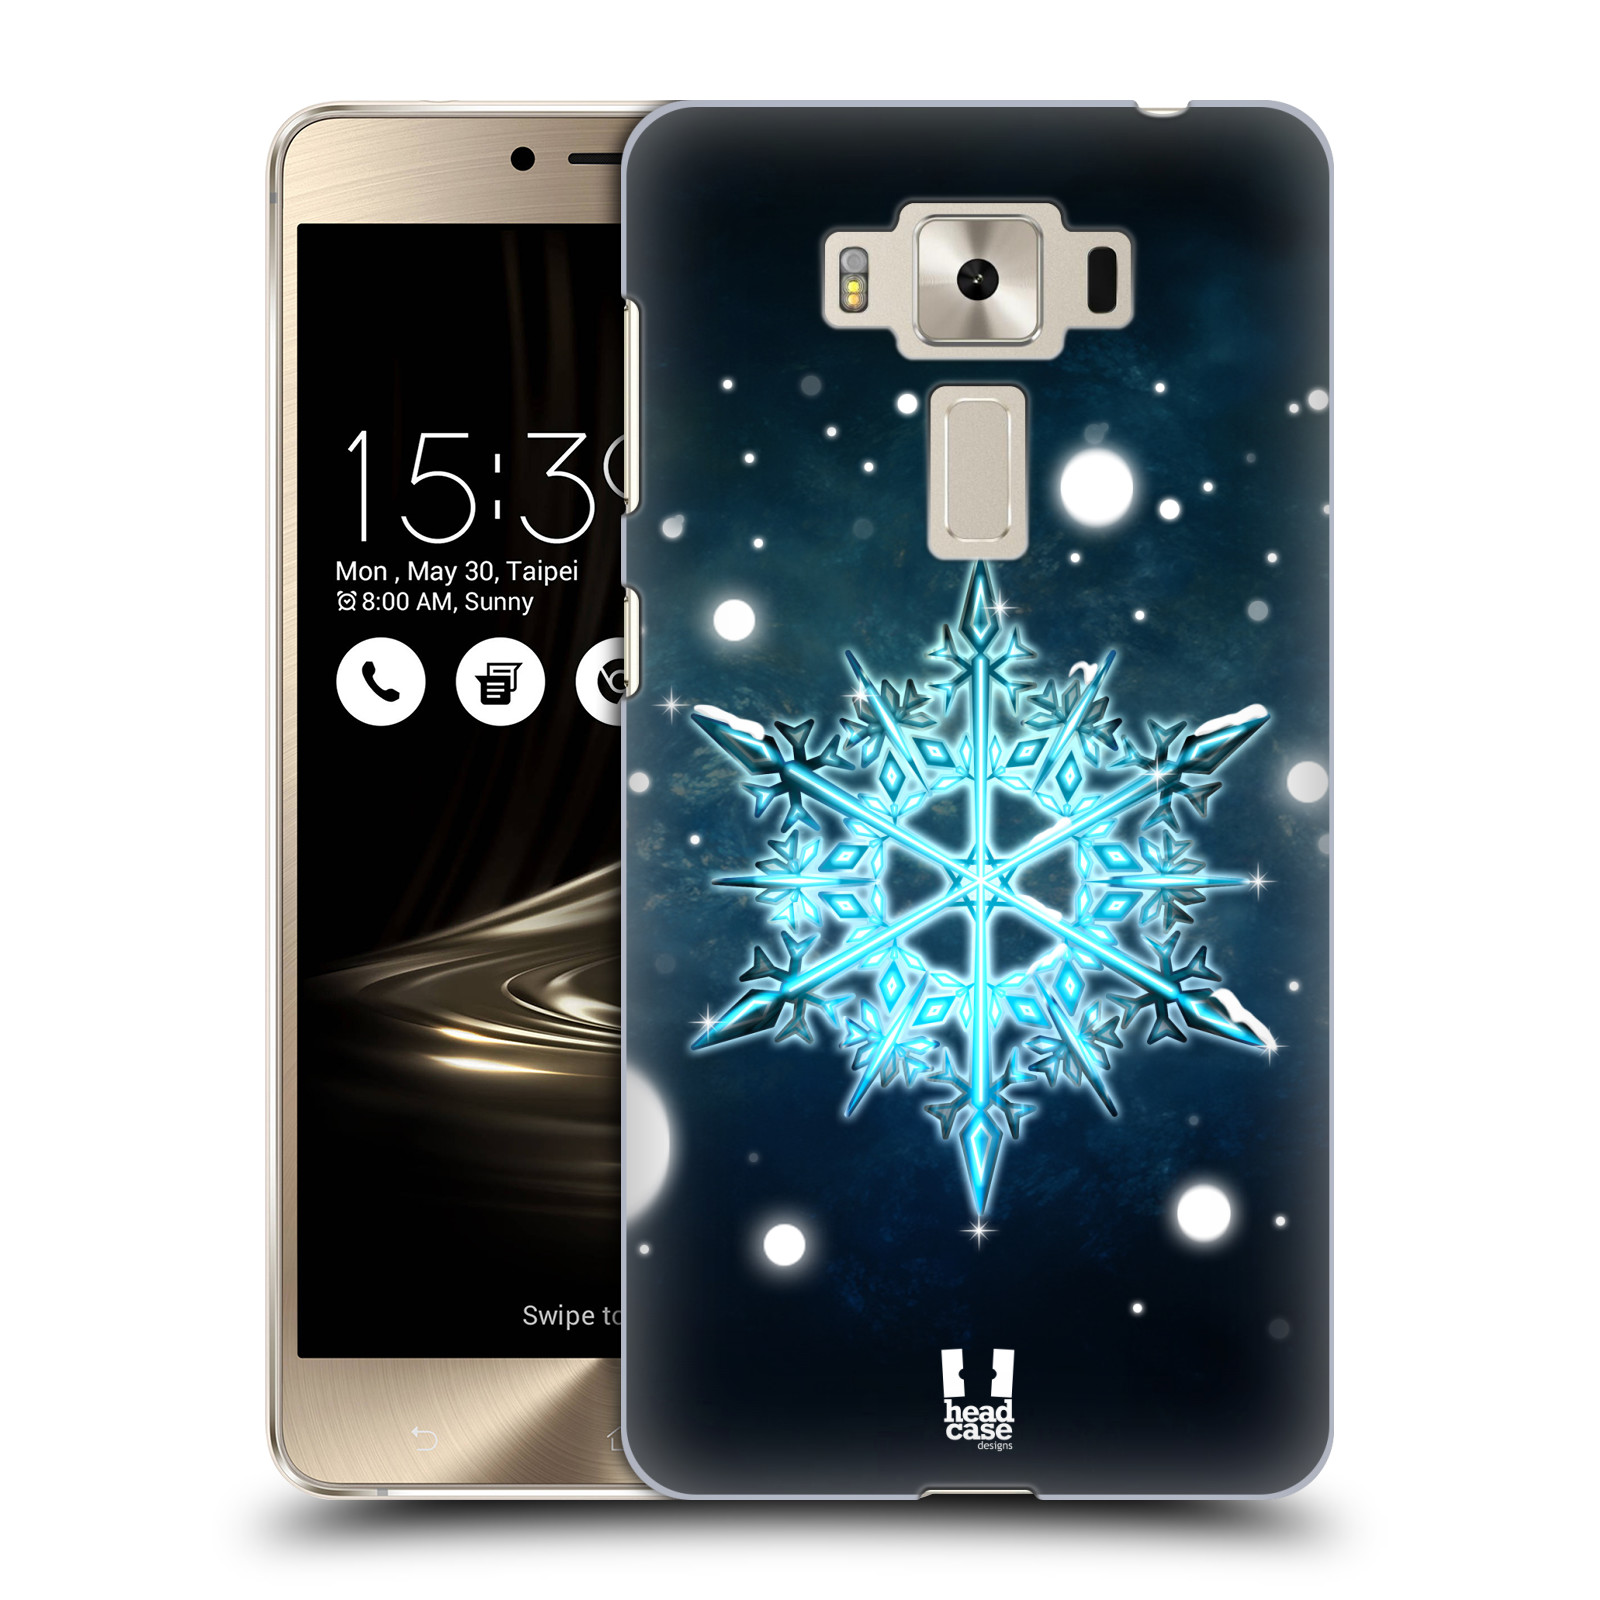 HEAD CASE plastový obal na mobil Asus Zenfone 3 DELUXE ZS550KL vzor Sněžné vločky modrá tyrkys